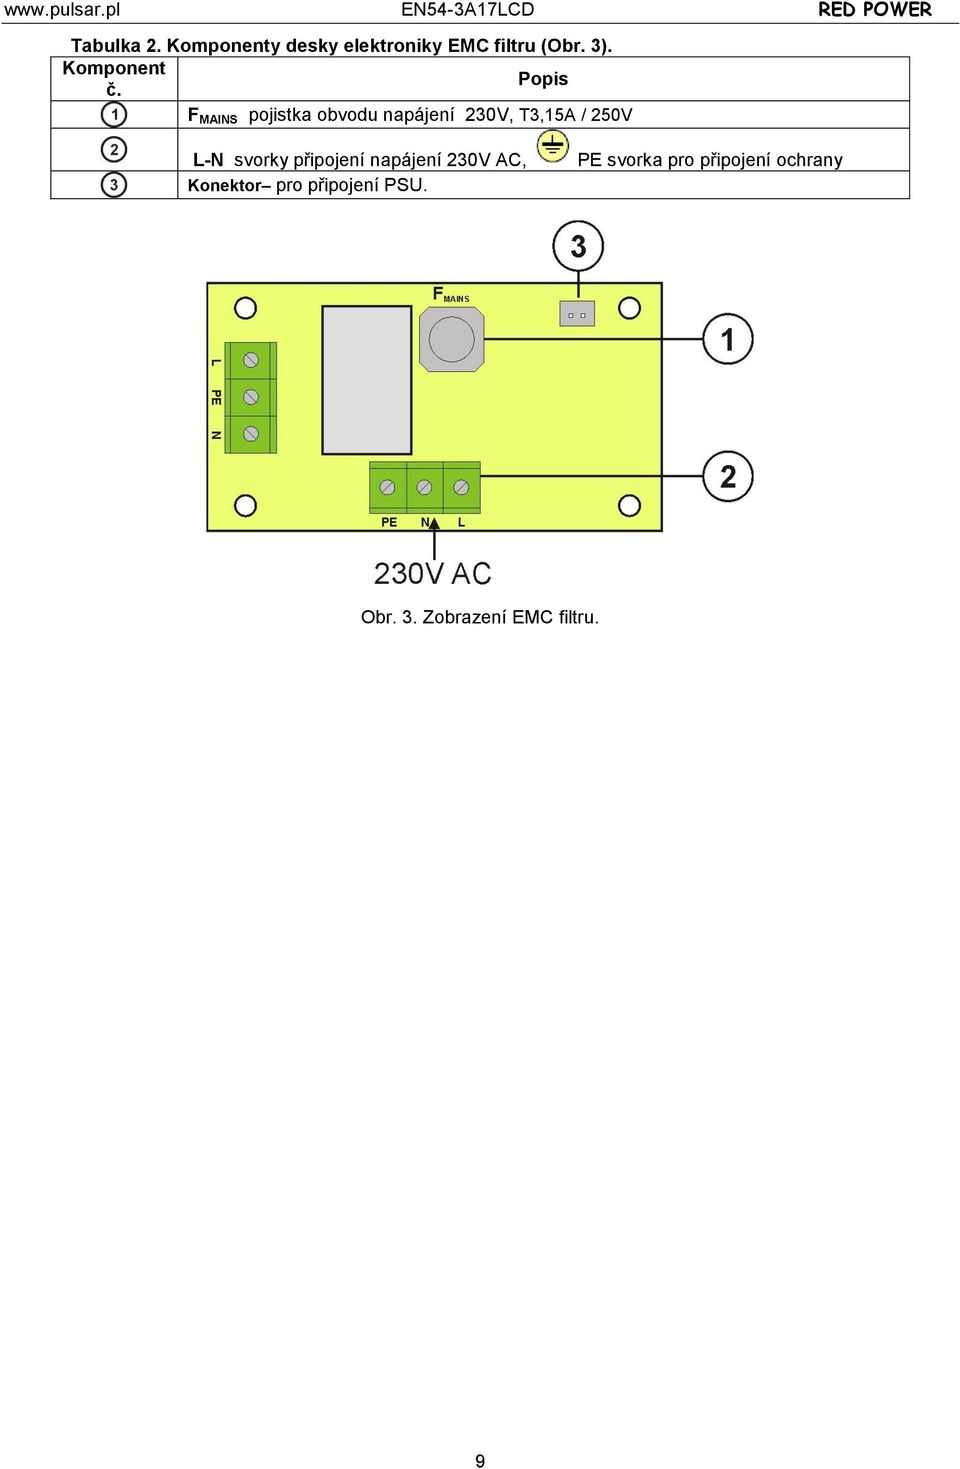 F MAINS pojistka obvodu napájení 230V, T3,15A / 250V L-N svorky